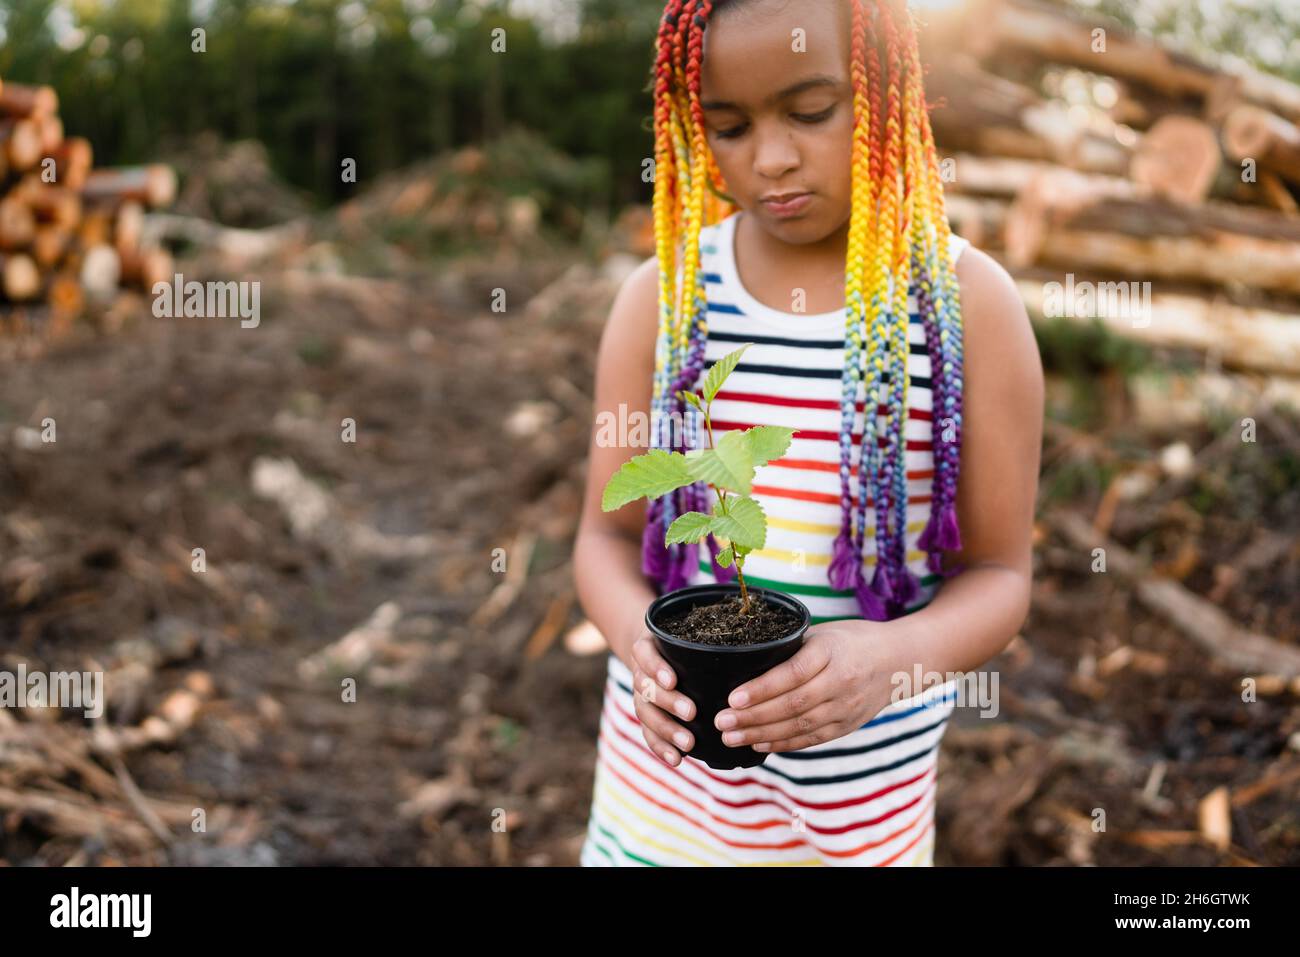 Junge gemischte Rasse Mädchen mit Regenbogen-Box Zöpfe steht auf der Logging-Website hält einen Baum spling zu Pflanzen. Stockfoto